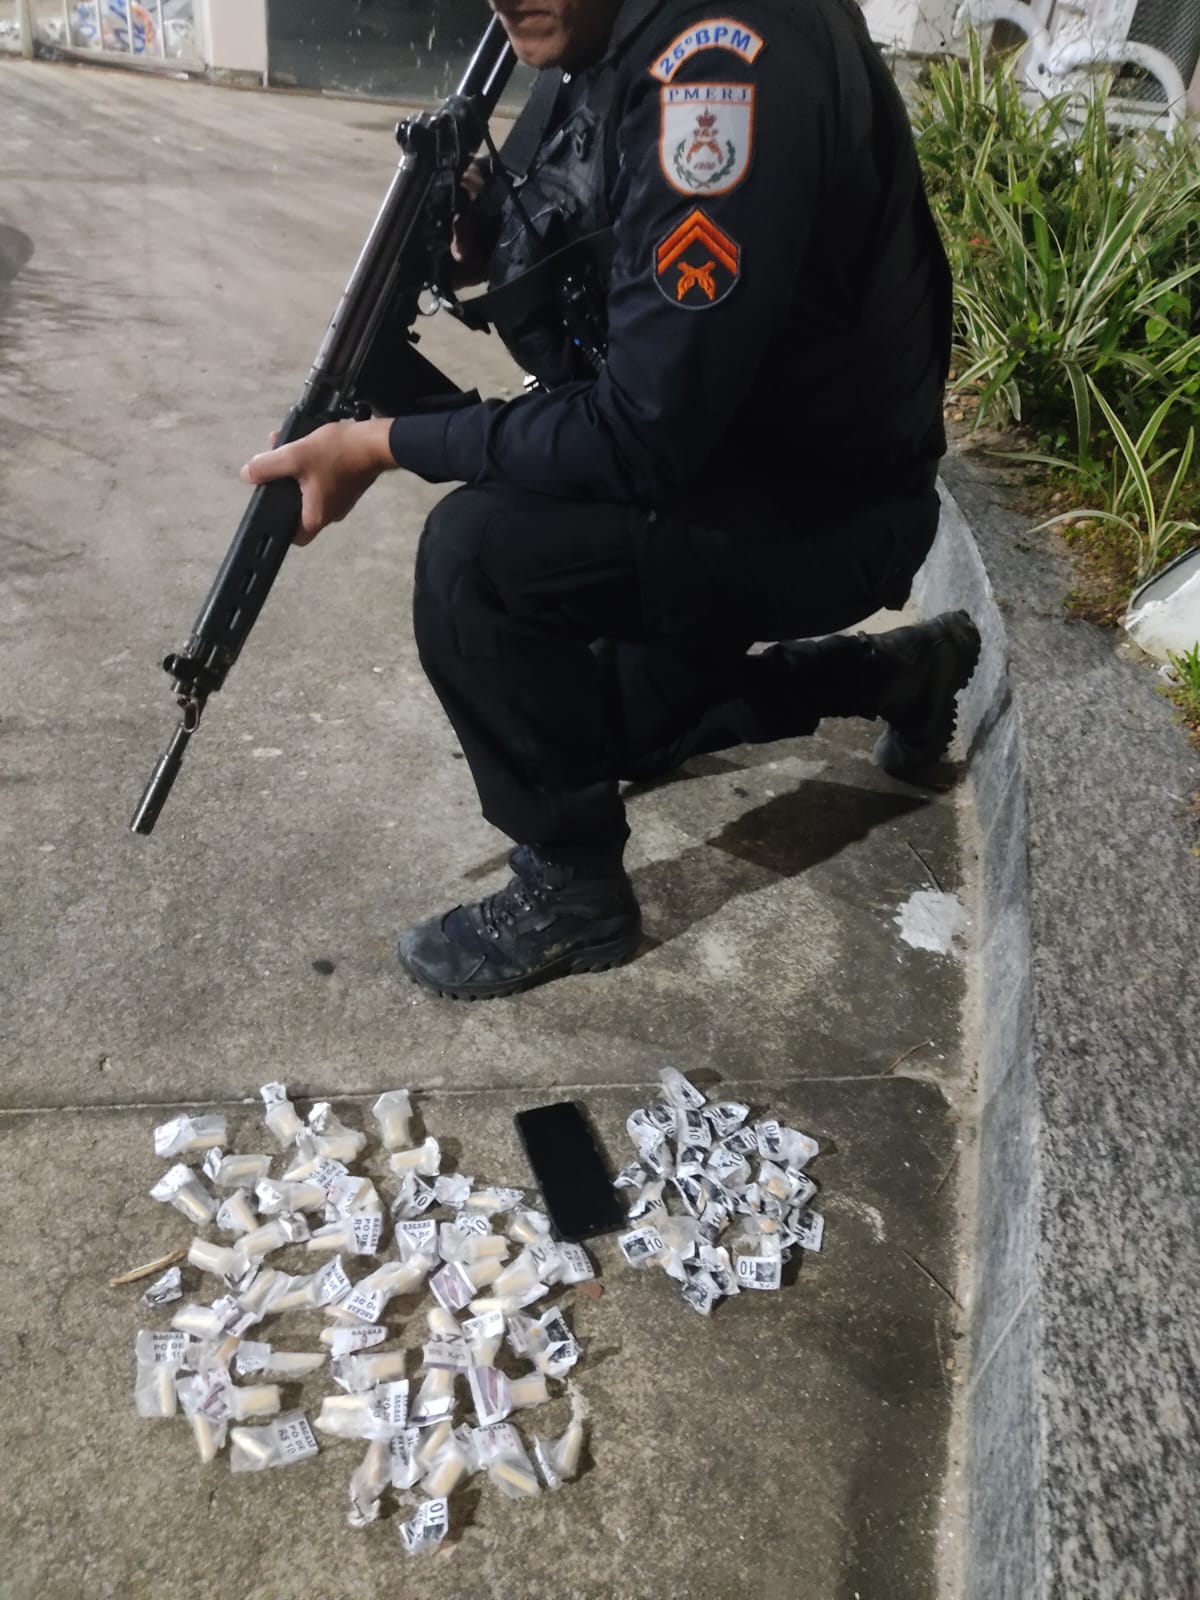 Polícia Militar age rapidamente e prende suspeito com drogas em Saquarema